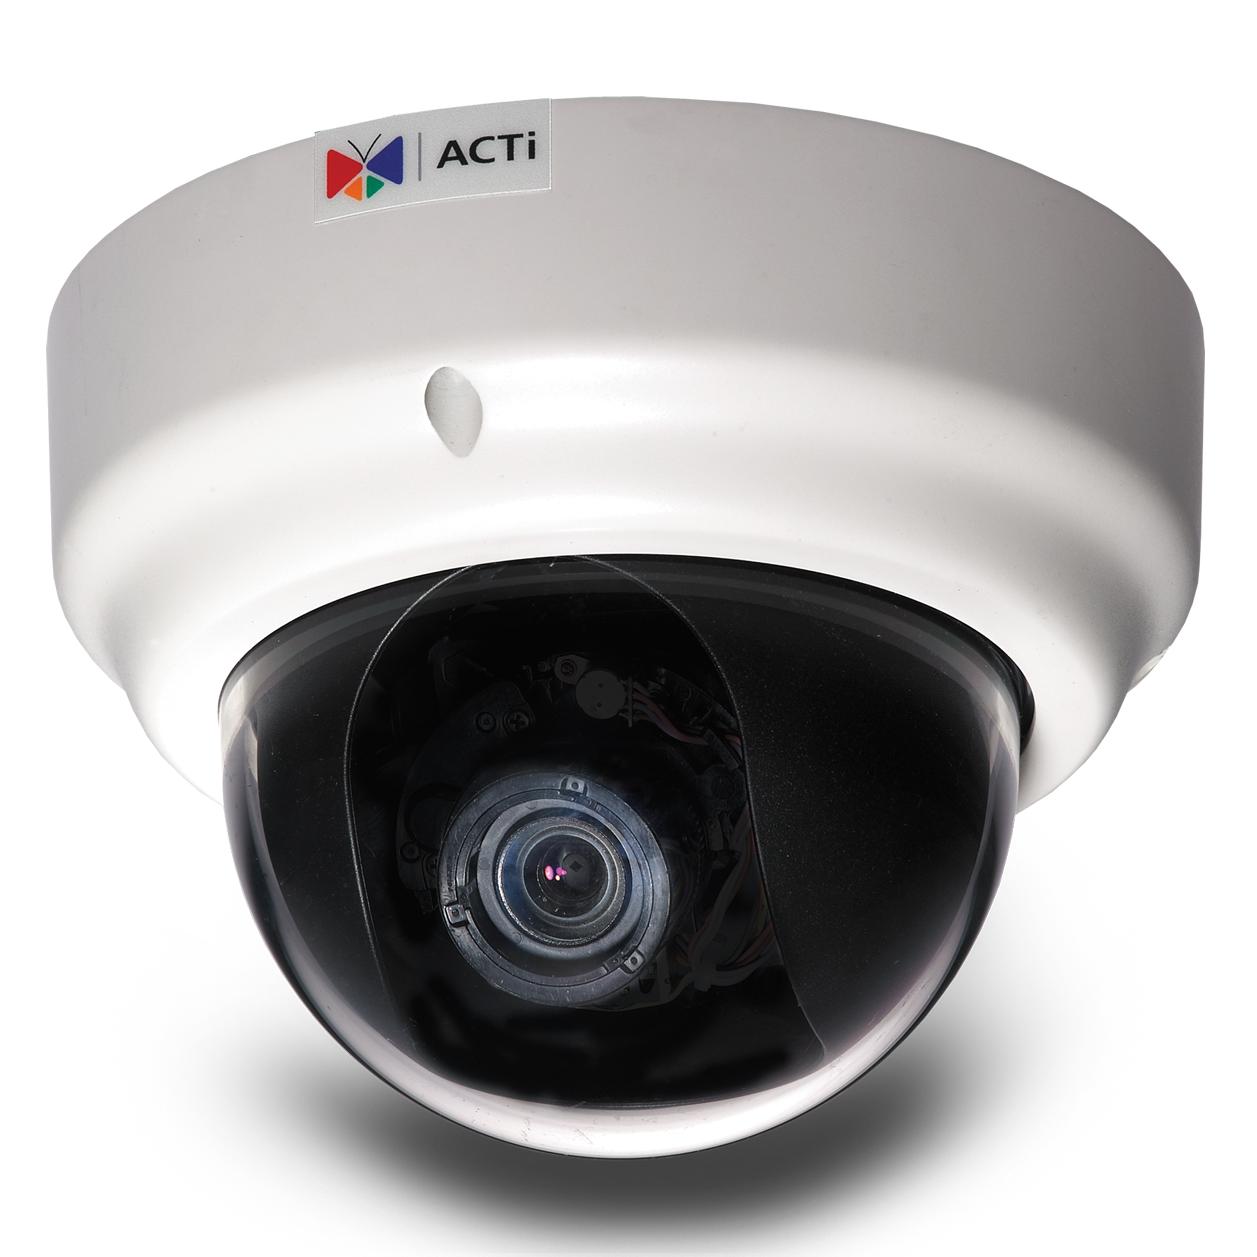 Купить видеонаблюдения для дома спб. IP камера acti (KCM-5611). IP-камера видеонаблюдения уличная acti a314. Купольная IP-камера acti d62a. Видеокамера acti KCM-5611.